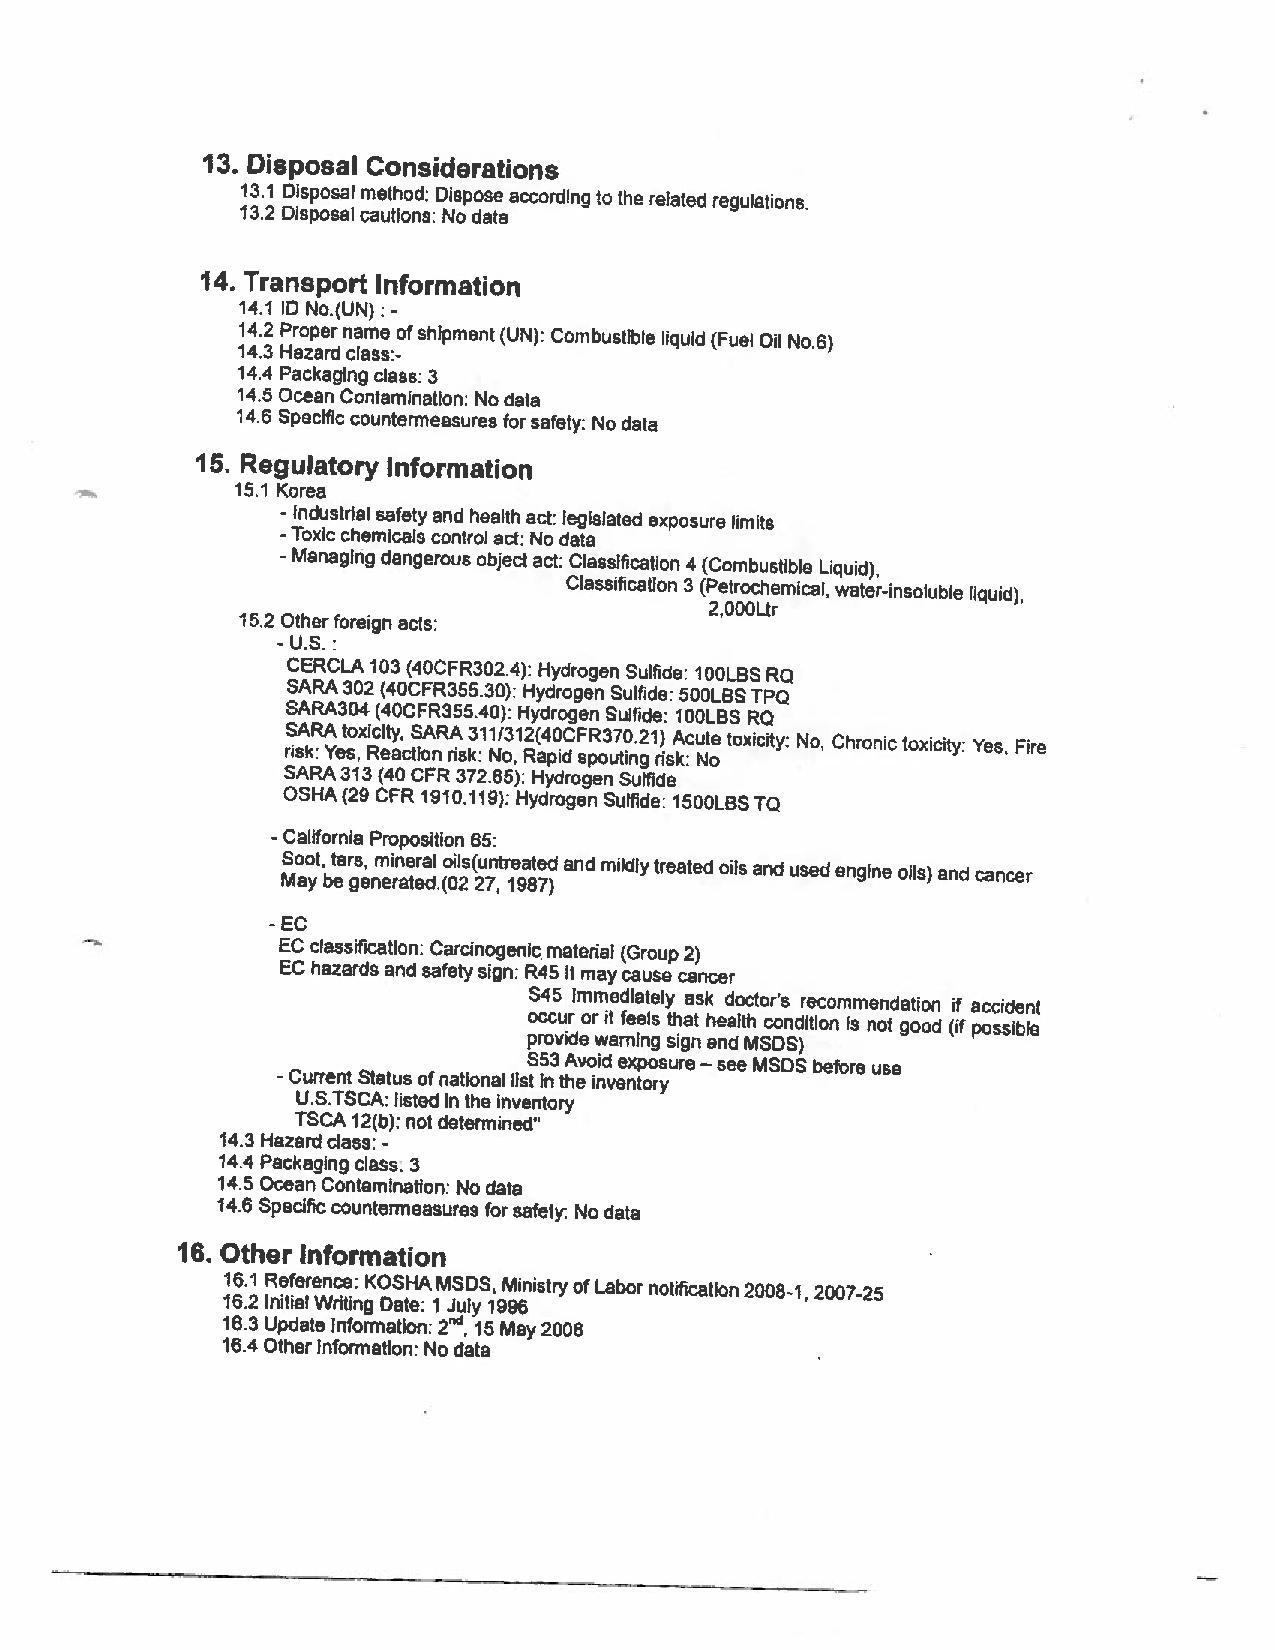 Version anglaise seulement - Page 6 numérisée de la Fiche technique sur la sécurité des substances présentes à bord le M/V Marathassa